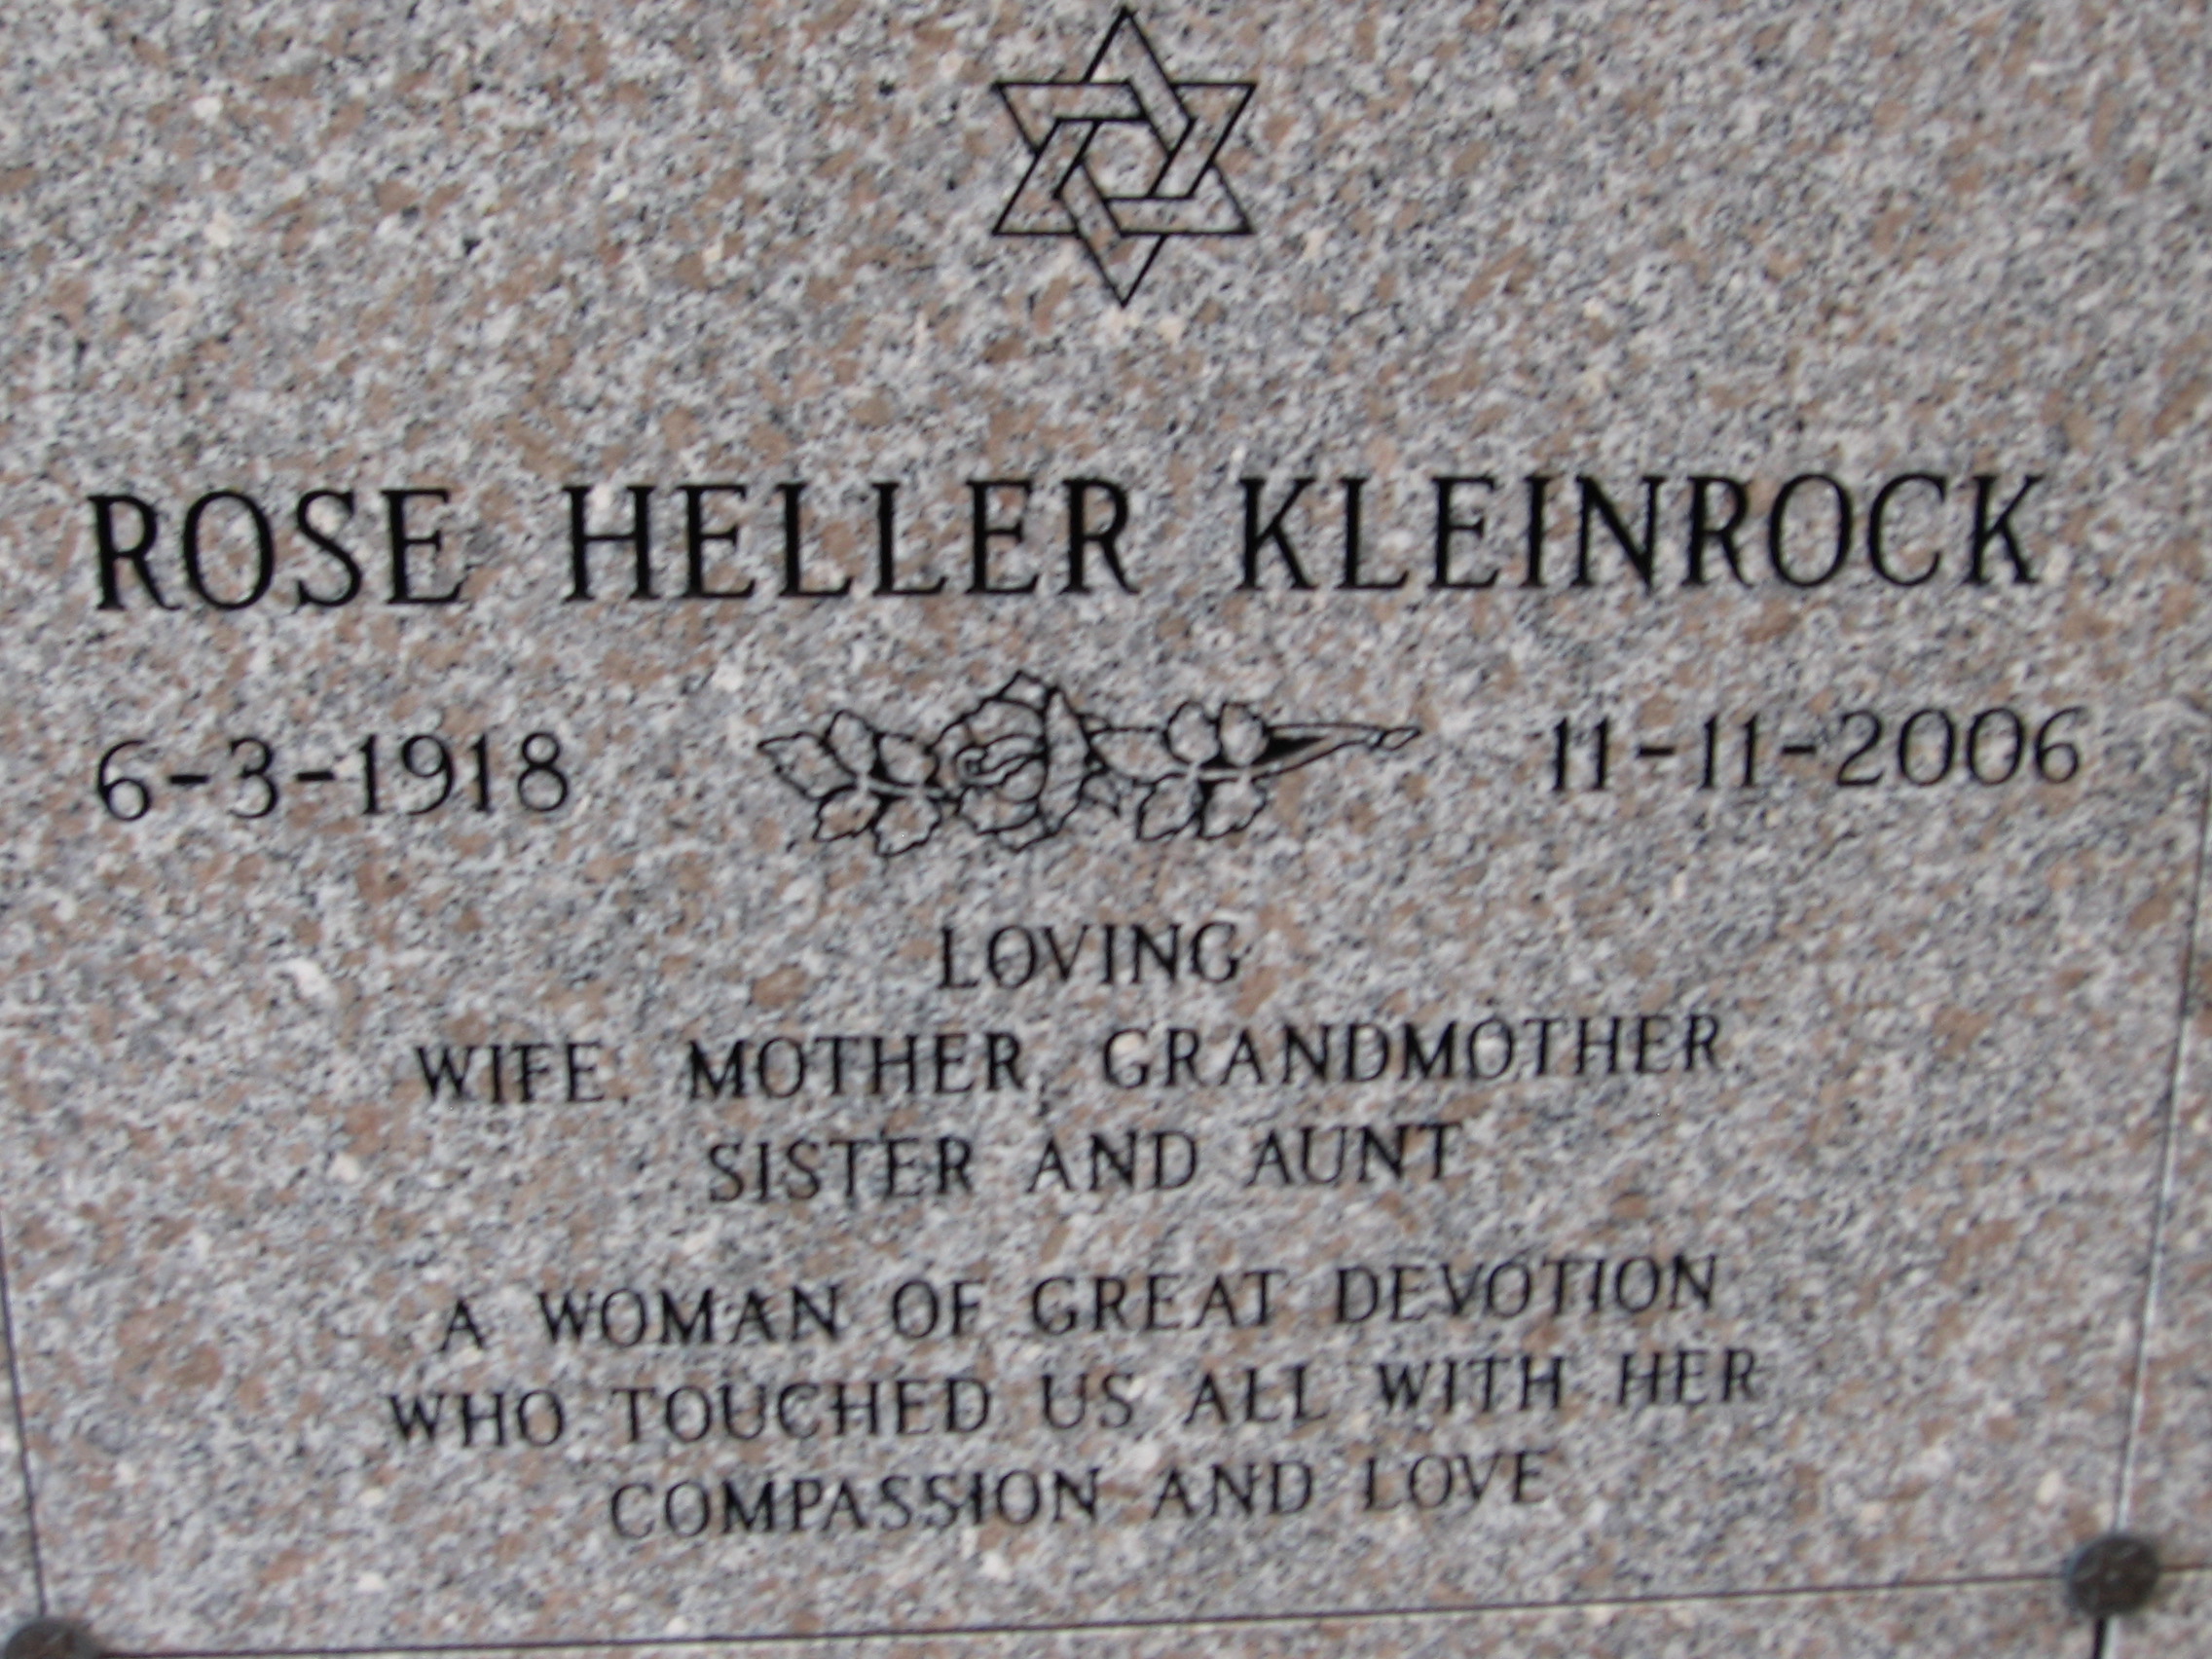 Rose Heller Kleinrock